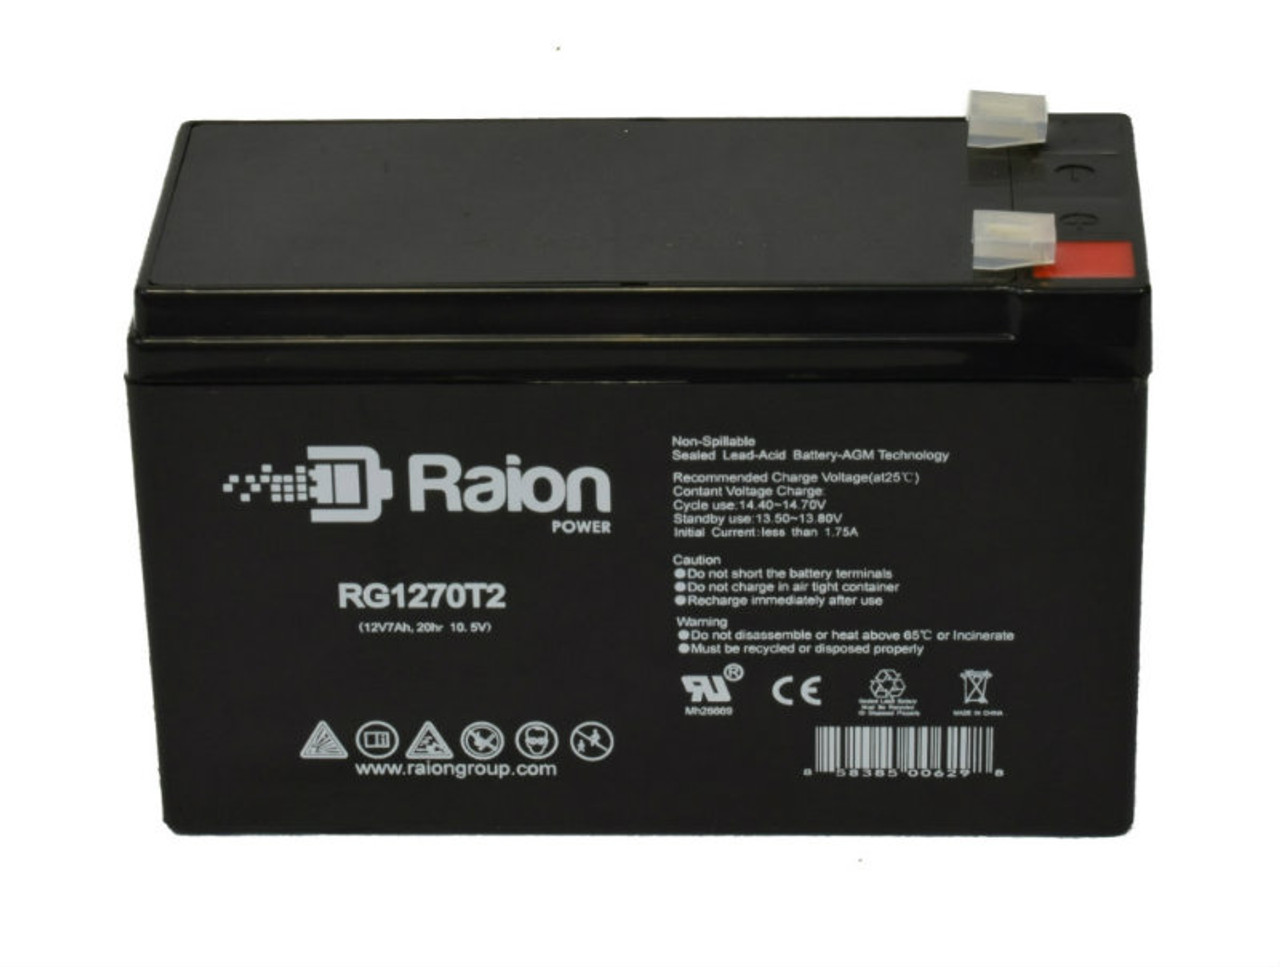 Raion Power RG1270T1 12V 7Ah Lead Acid Battery for Medtek Model PVL 7000